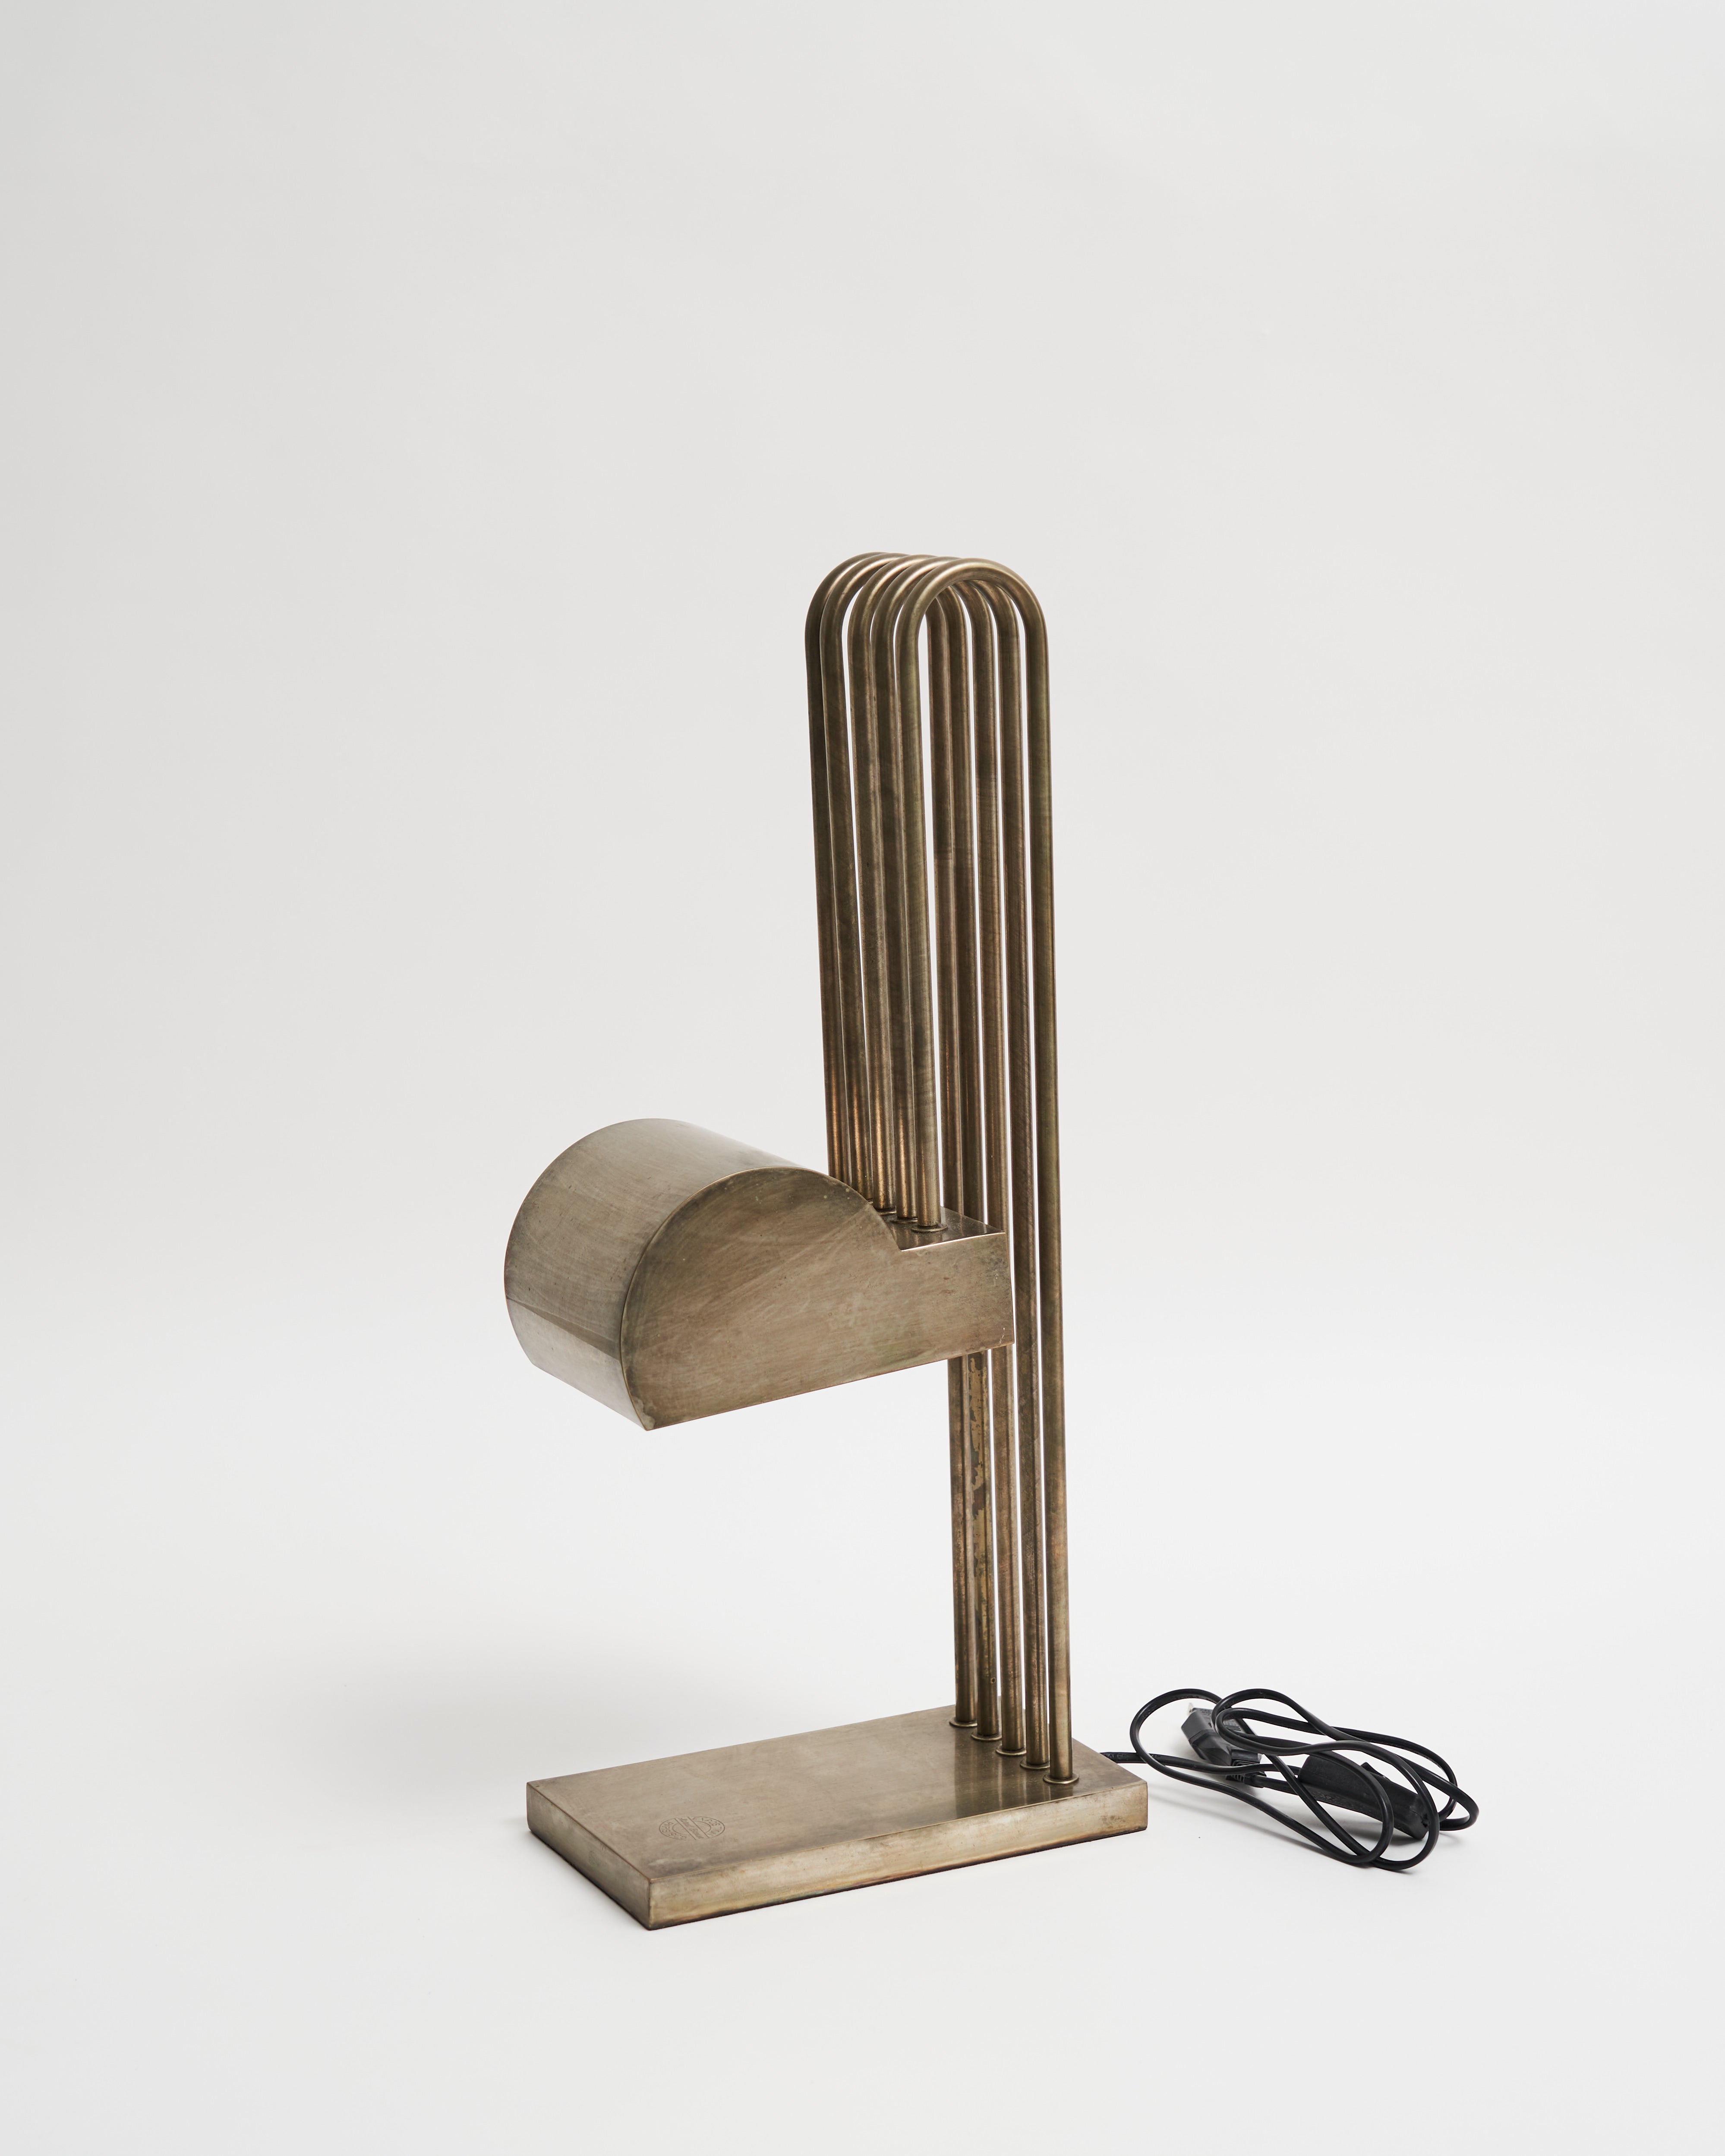 Desk lamp designed by Marcel Breuer – Graphpaper